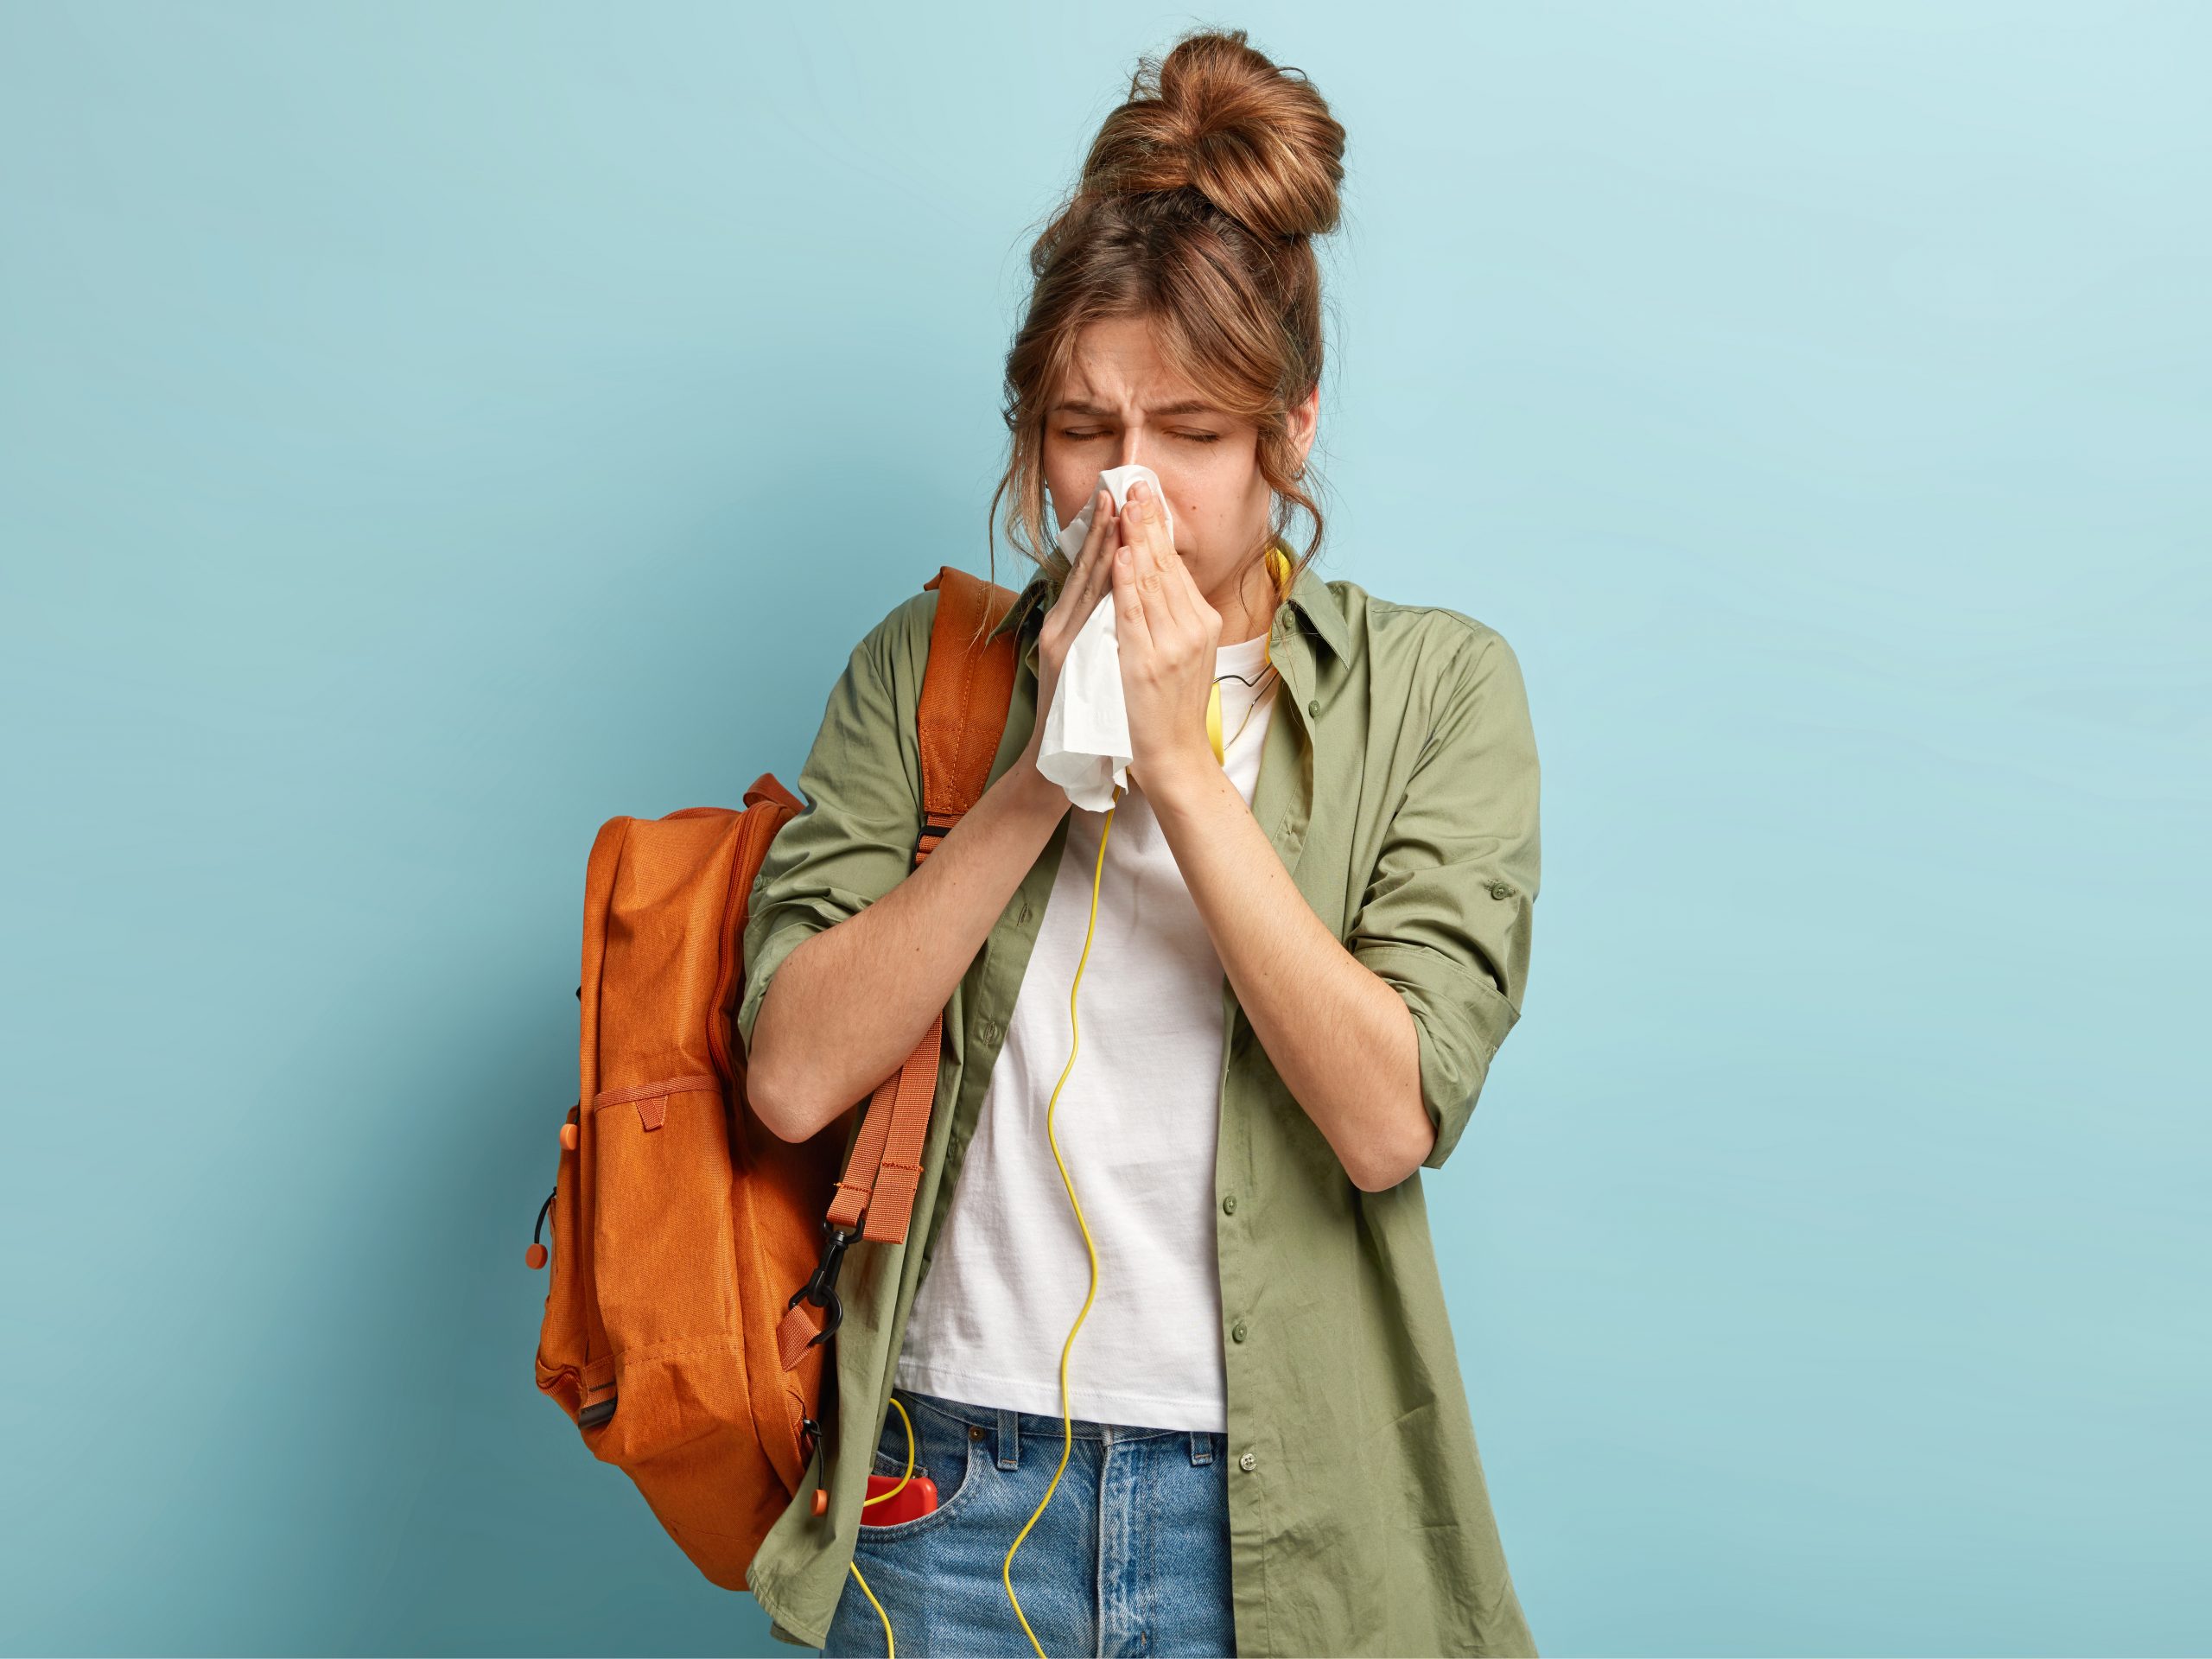 ¿Por qué decimos "salud" cuando alguien estornuda?